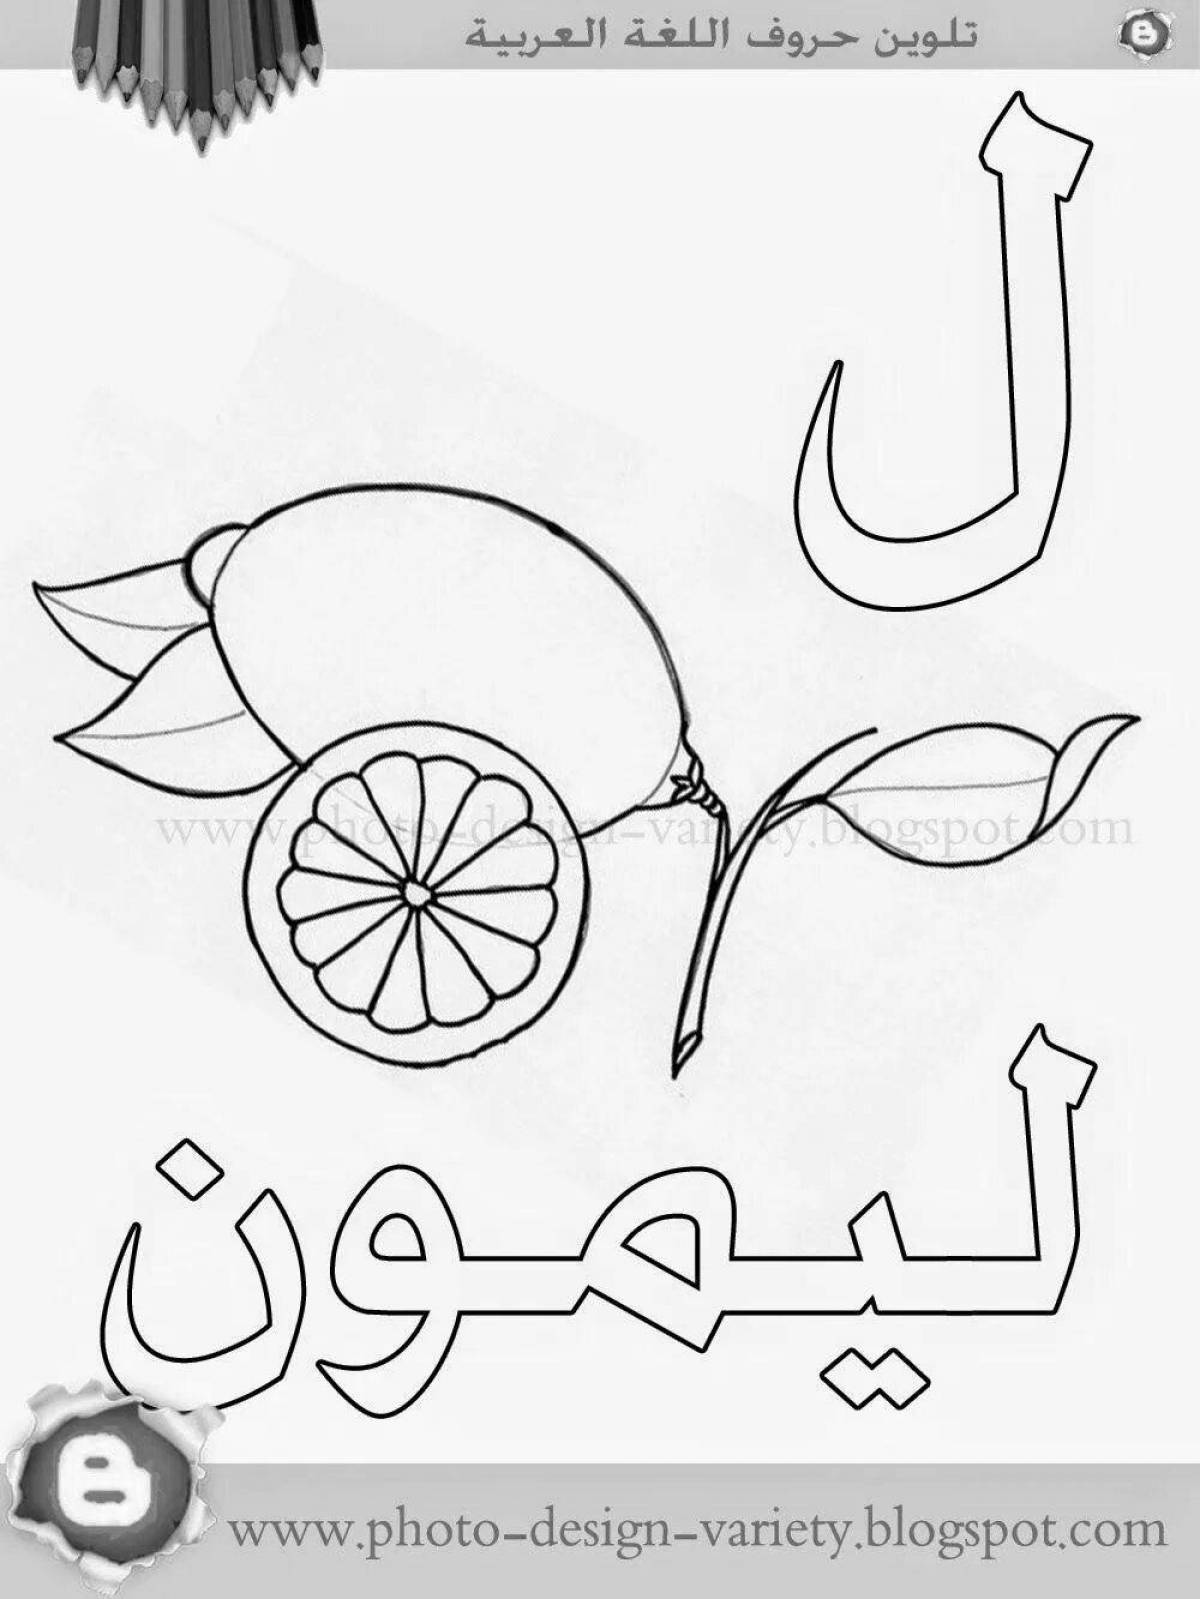 Веселая раскраска арабского алфавита для детей